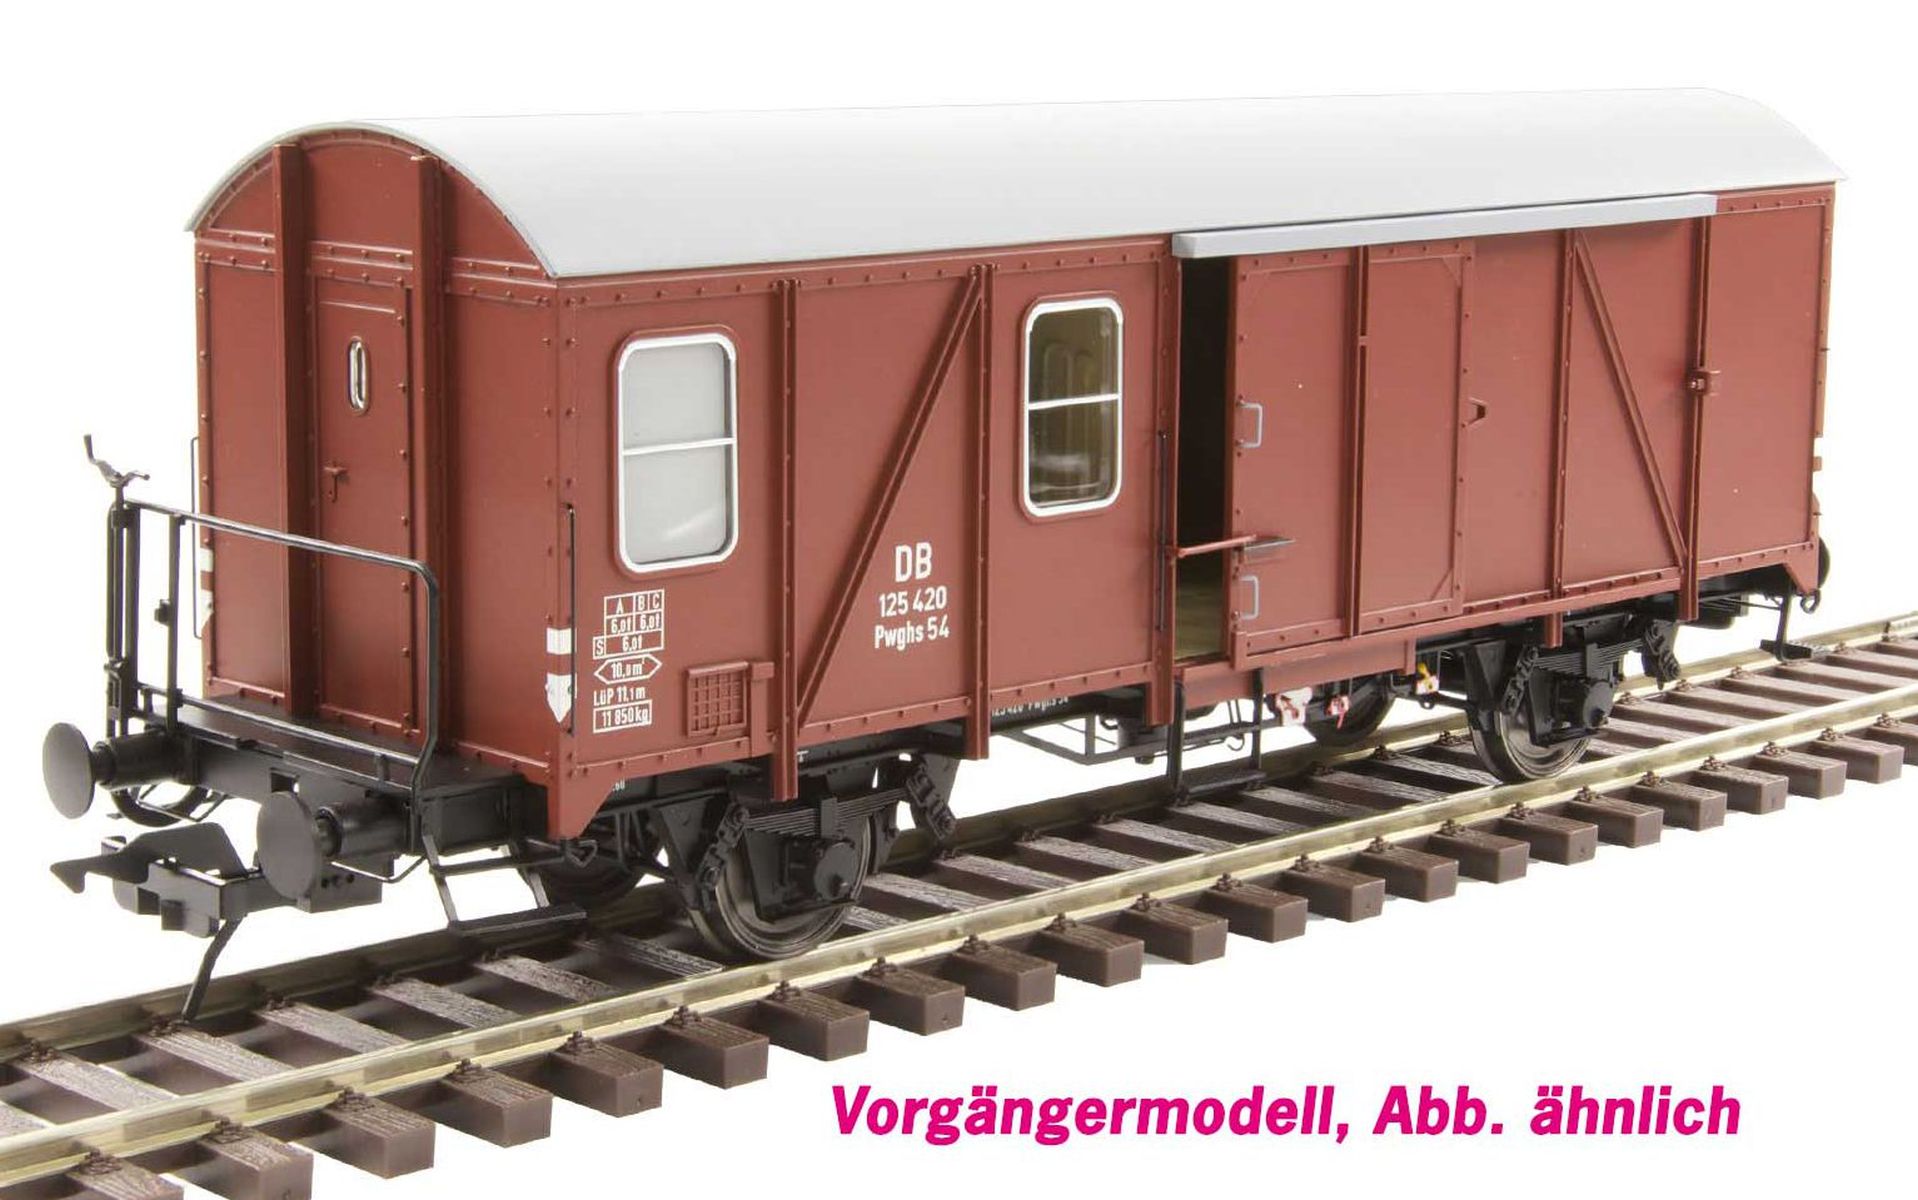 Lenz 42238-04 - Güterzuggepäckwagen Pwghs 54, DB, Ep.IV